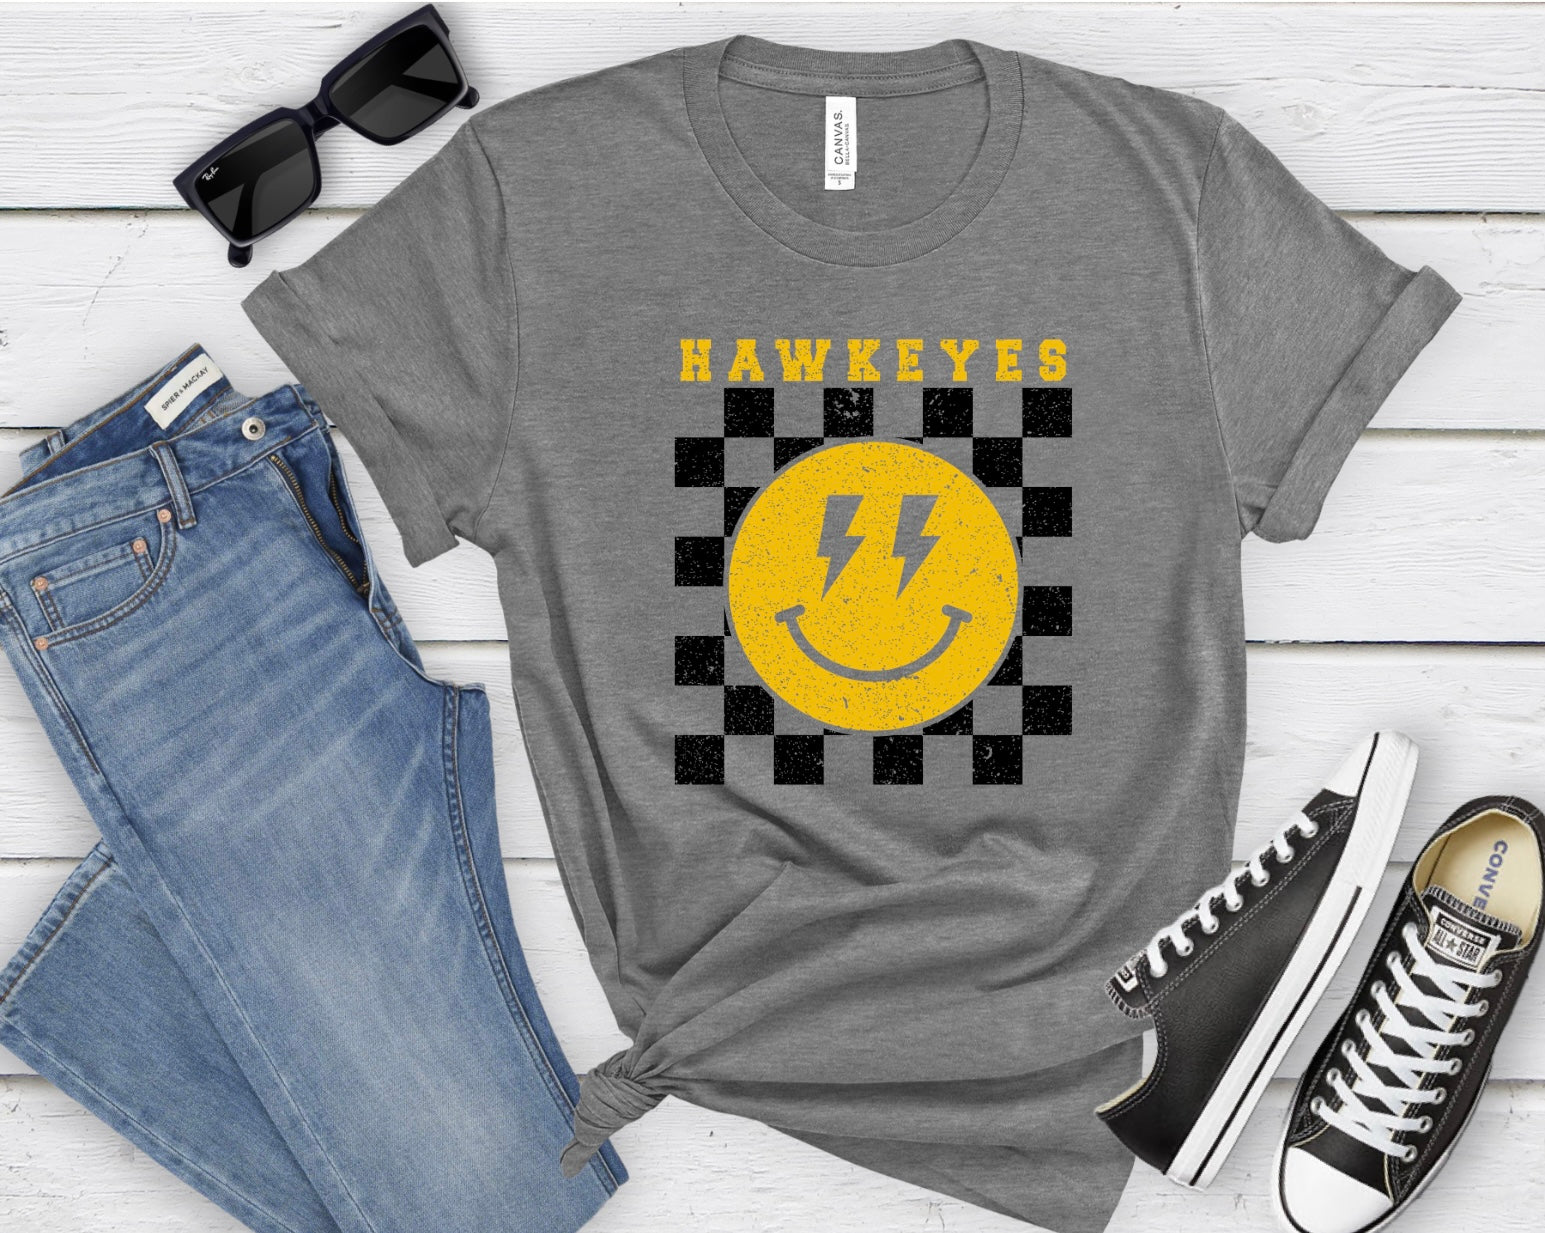 Hawkeyes Smiley T-shirt